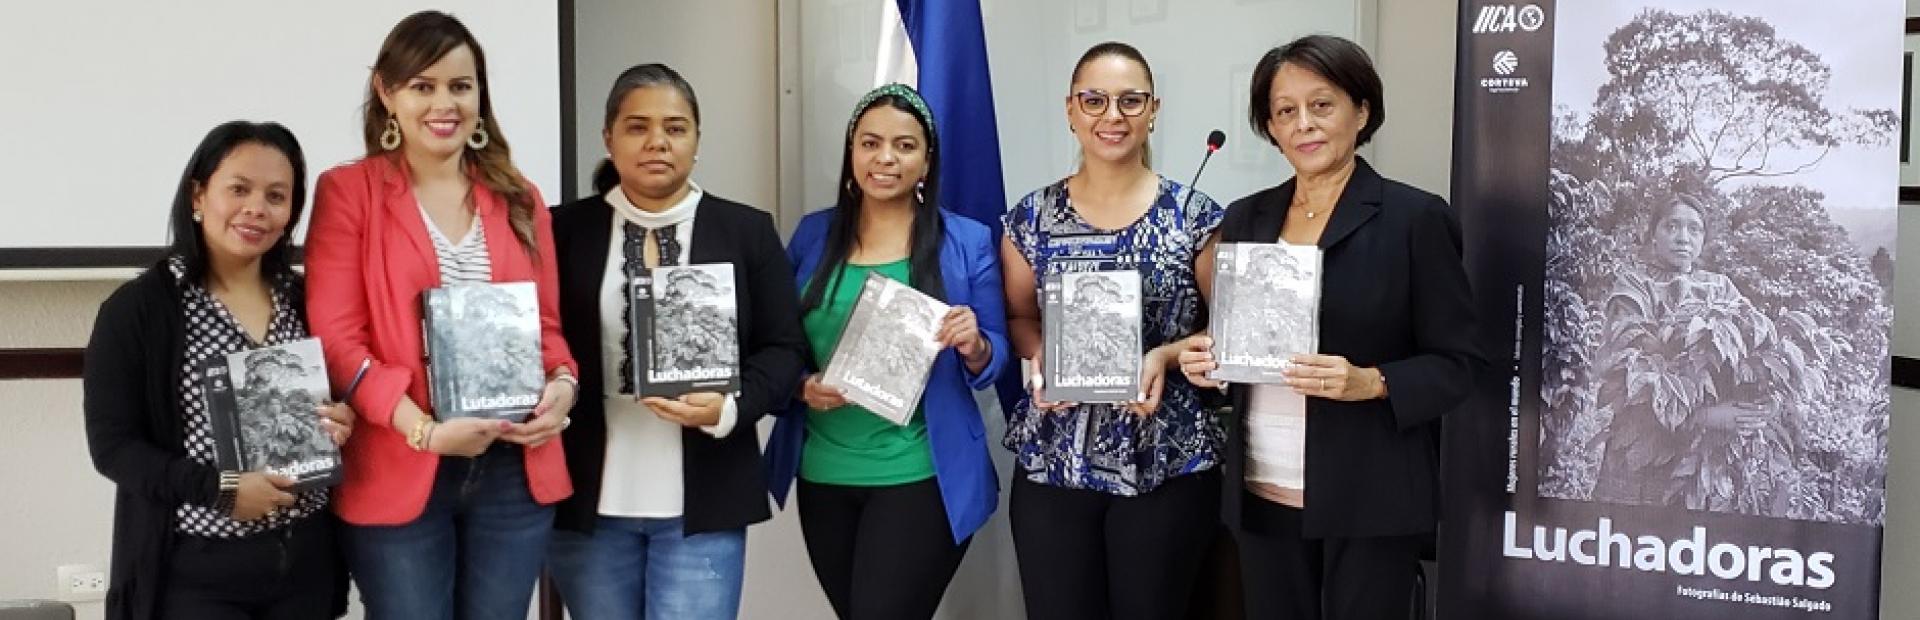 IICA conmemora Día de la Mujer Hondureña con el lanzamiento del libro Luchadoras